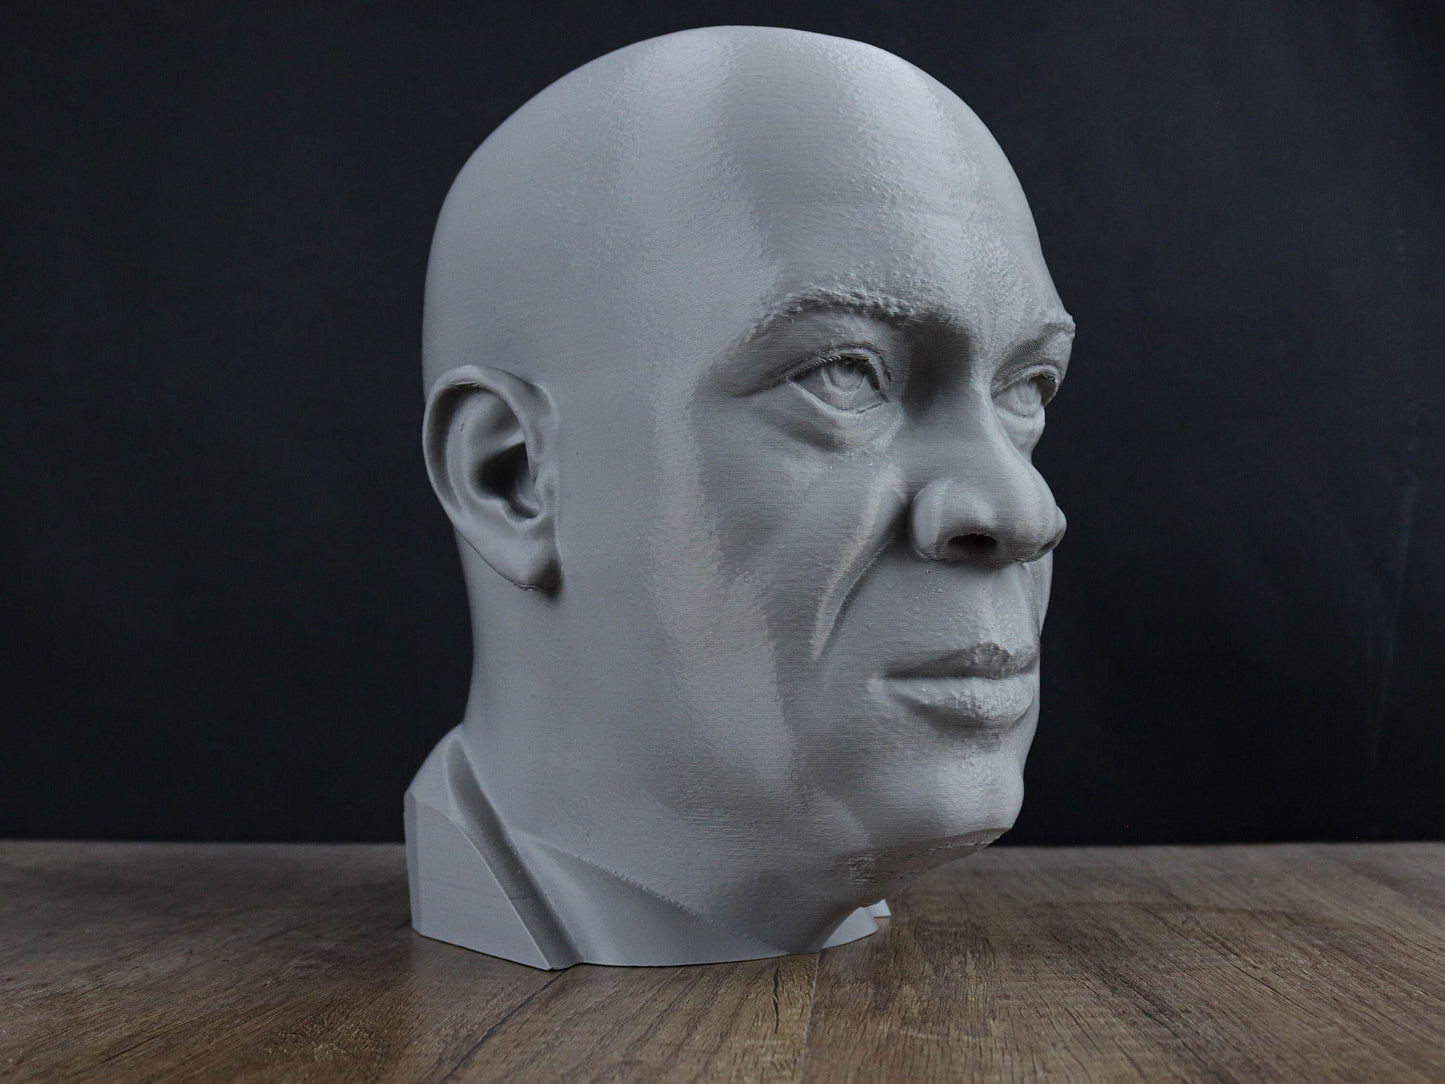 Samuel L Jackson 3d Bust, Headphone Holder Sculpture